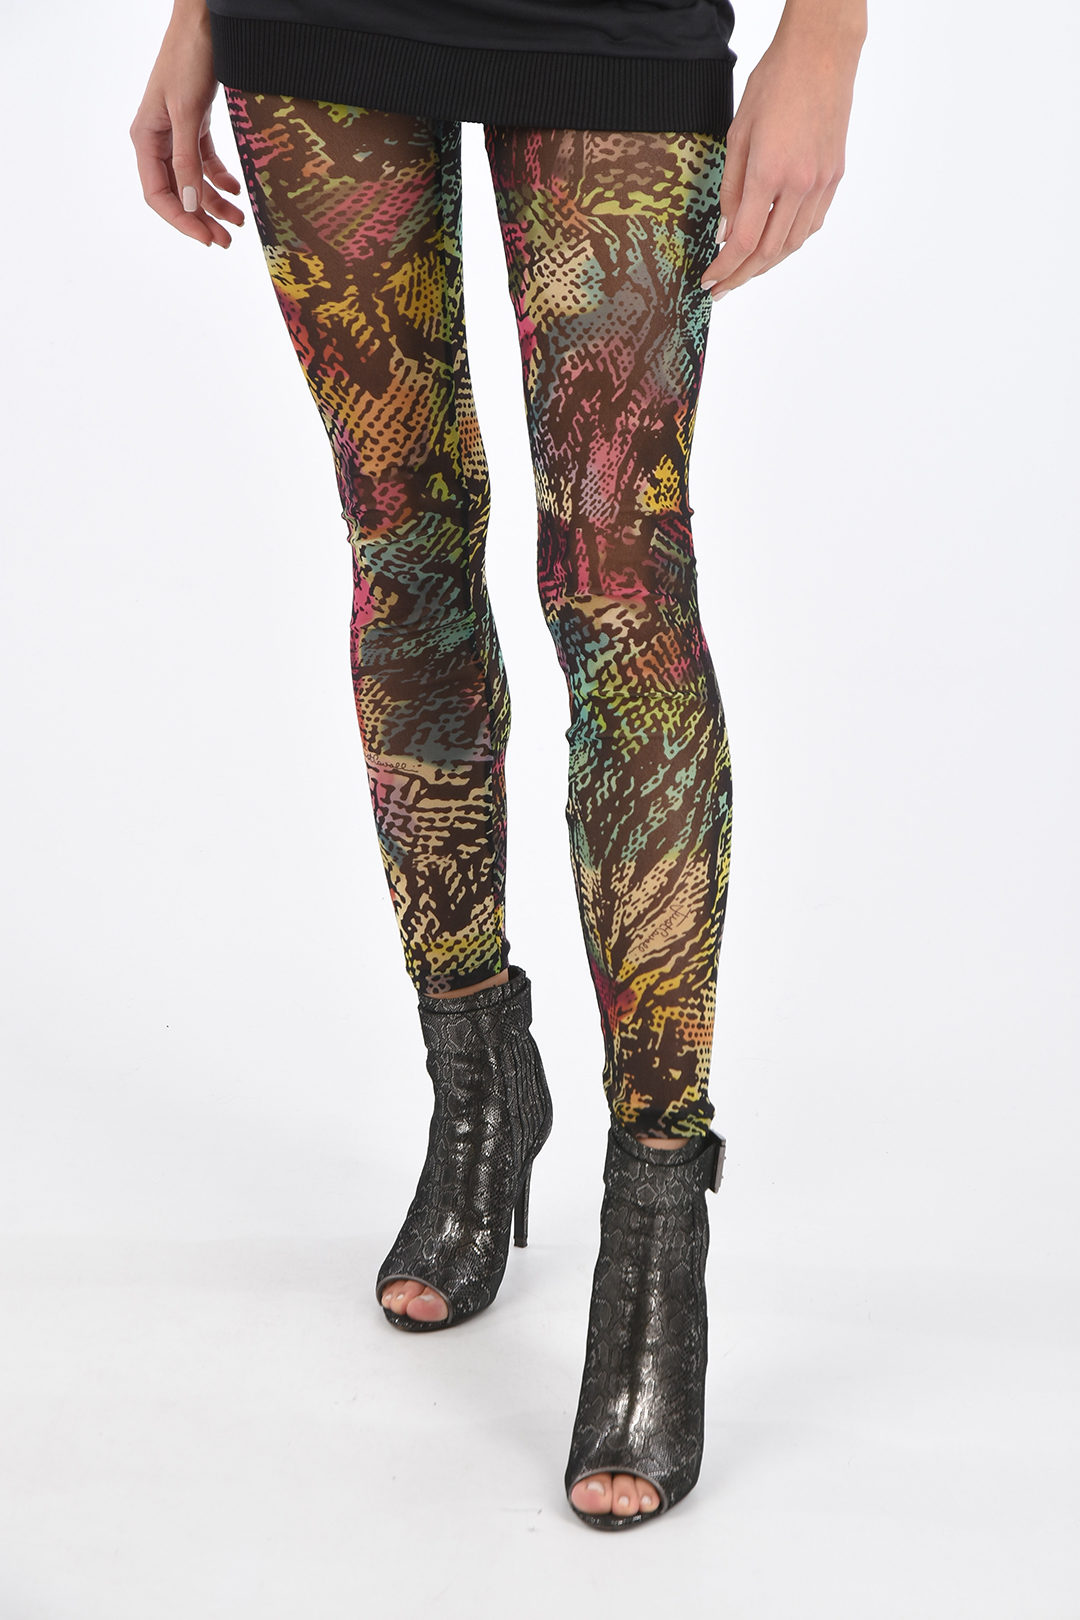 Ganni Floral Patterned Sheer Leggings women - Glamood Outlet